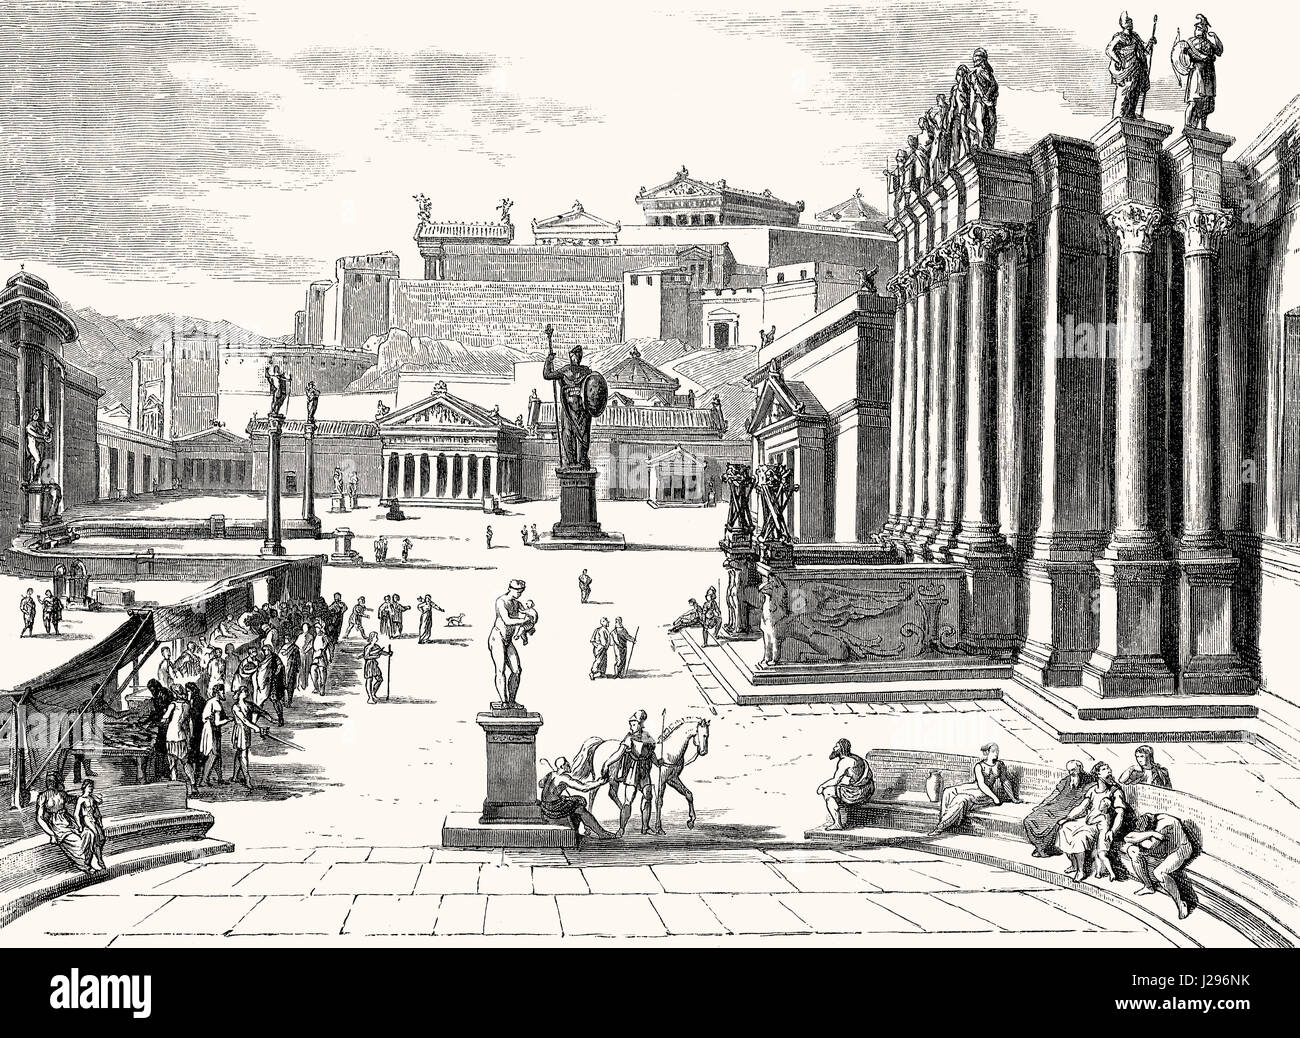 Le marché de Sparte, une cité-état de la Grèce antique Banque D'Images